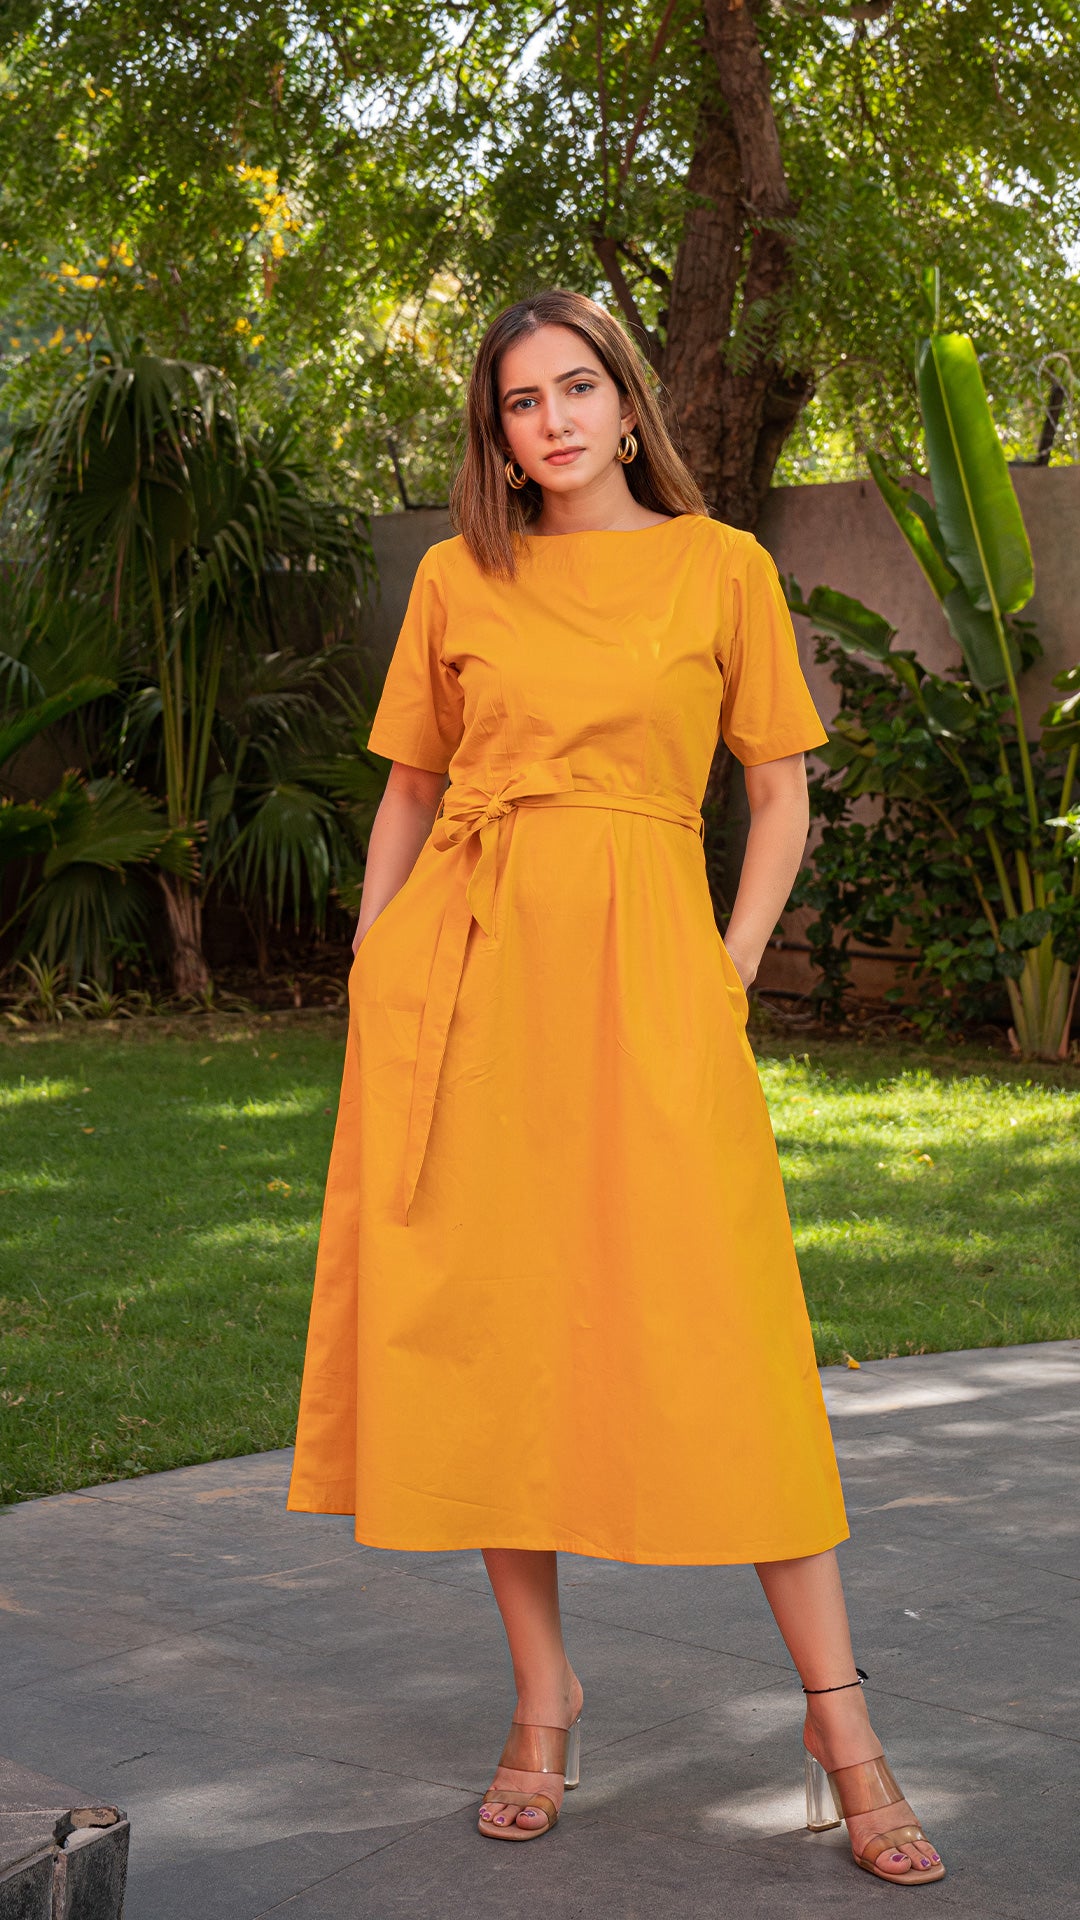 The Summer Dress - Mustard